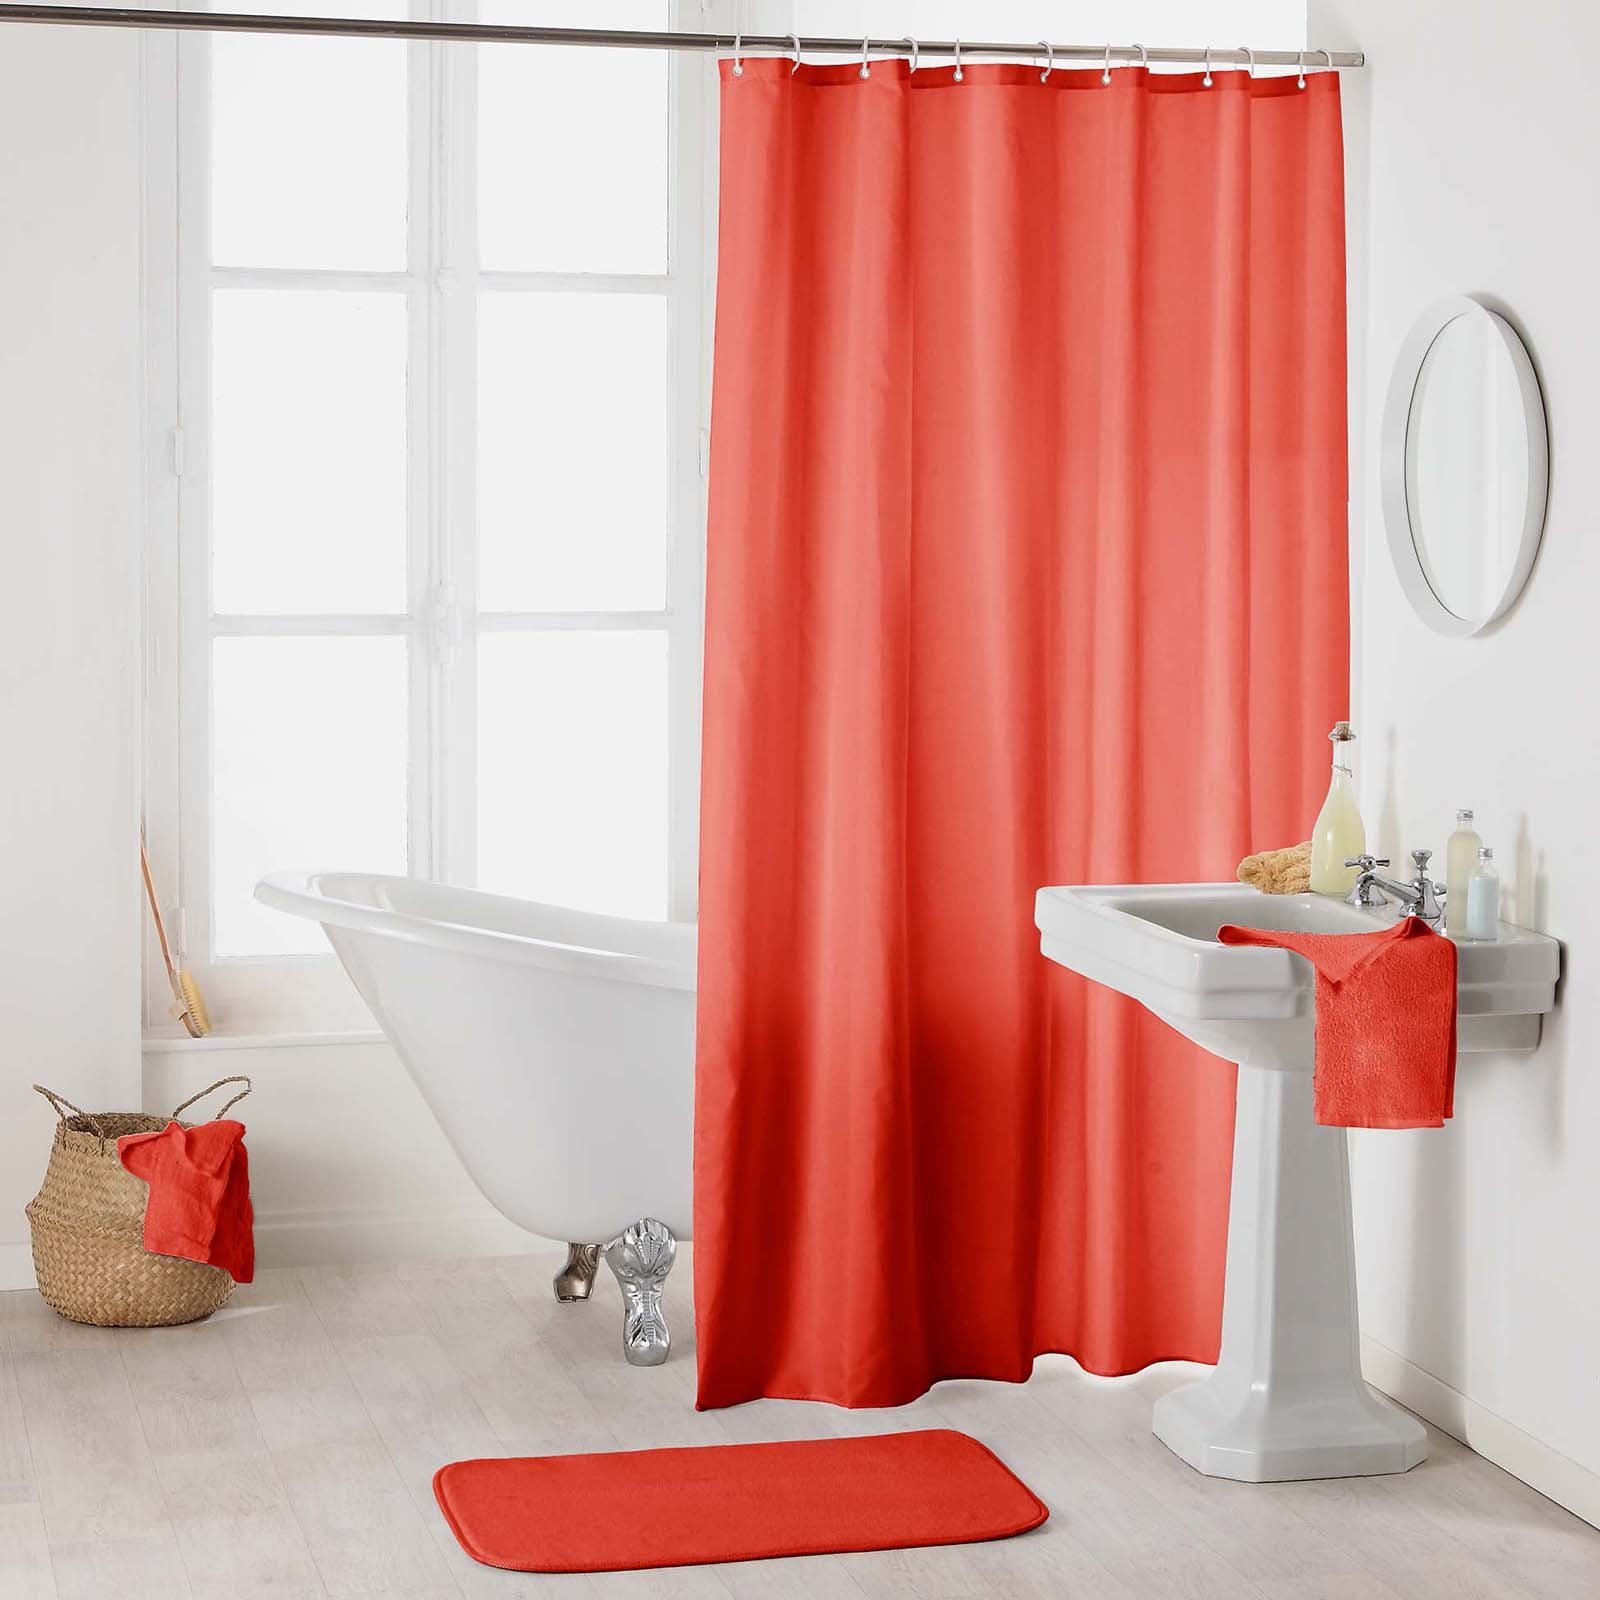 One Home Duschvorhang »Einfarbig« Breite 180 cm, wasserdicht online kaufen  | OTTO